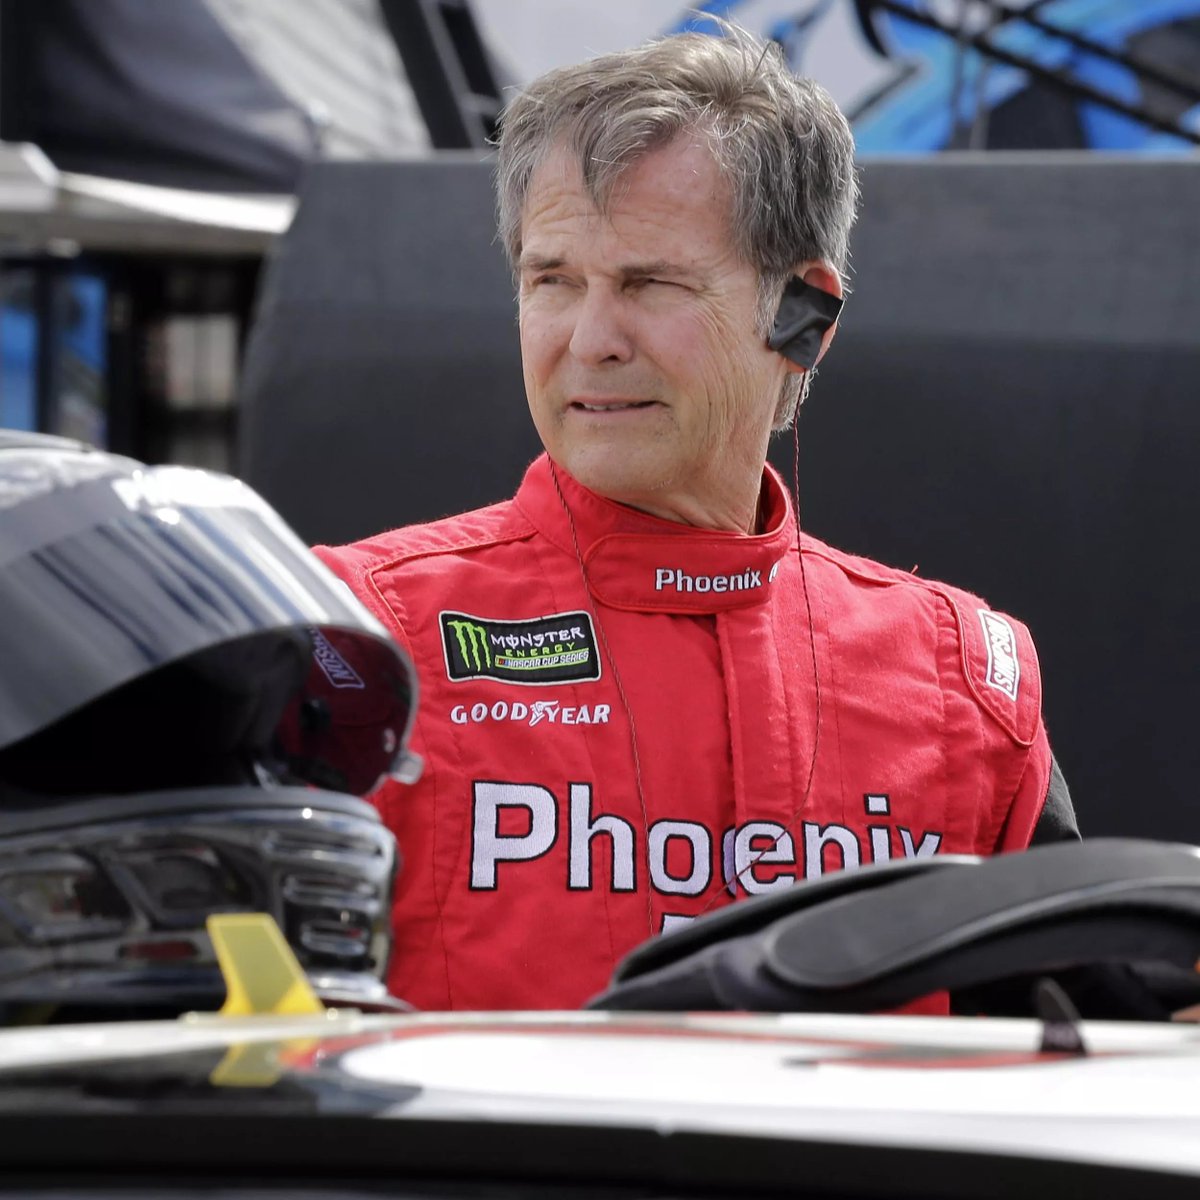 Mark Thompson, 1951 doğumlu eski asker, paraşüt eğitmeni ve Phoenix Air'in kurucusu. 1991 yılından beri ARCA serisinde yarı zamanlı yarışmaya başlamış ve 2018'e kadar NASCAR kariyerinde 100 yarışa çıkmıştır.